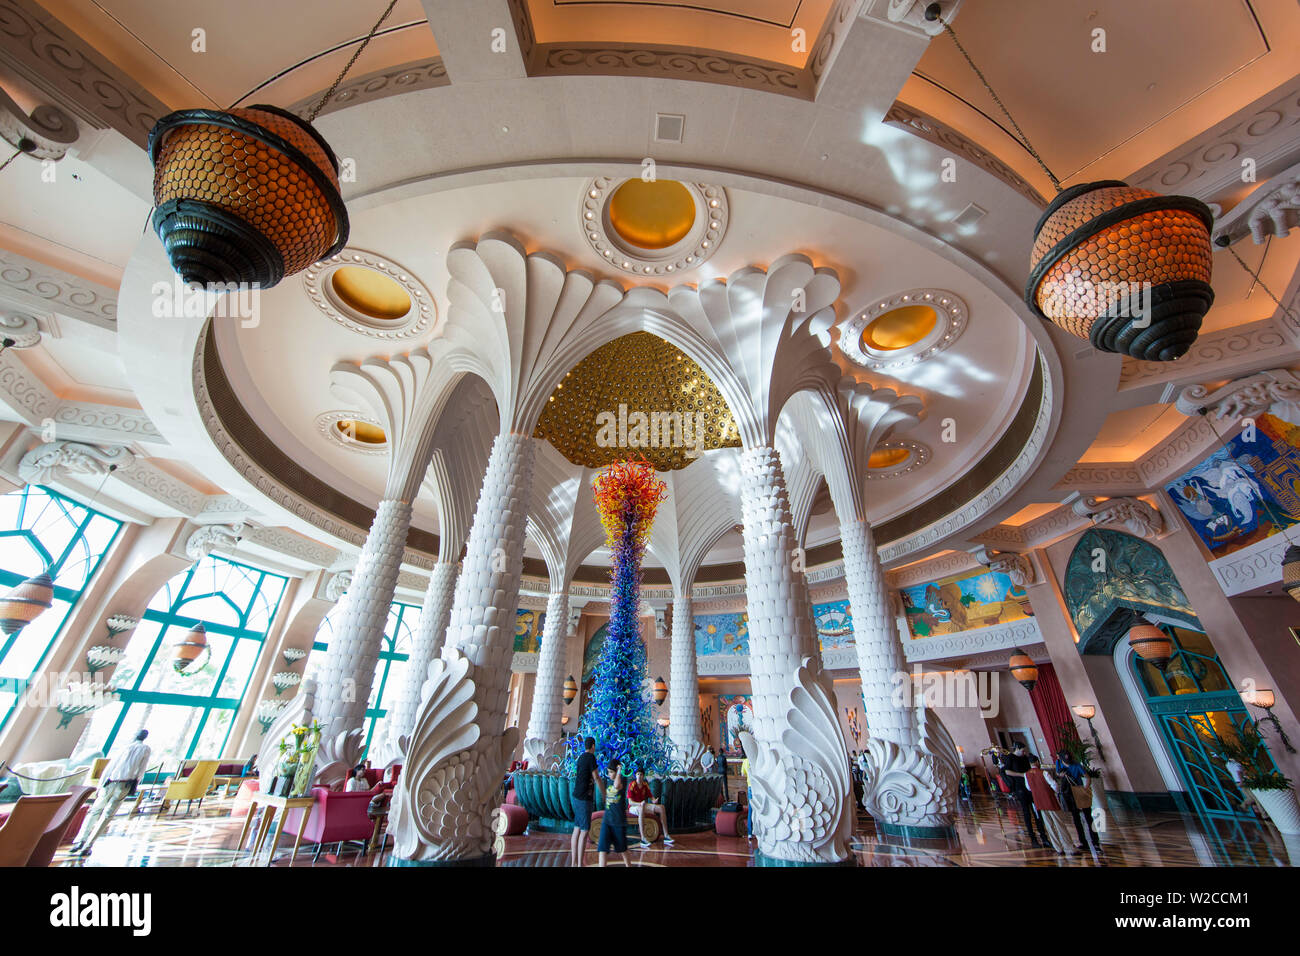 Hall de l'Hôtel Atlantis, Palm Jumeirah, Dubai, Émirats Arabes Unis Banque D'Images